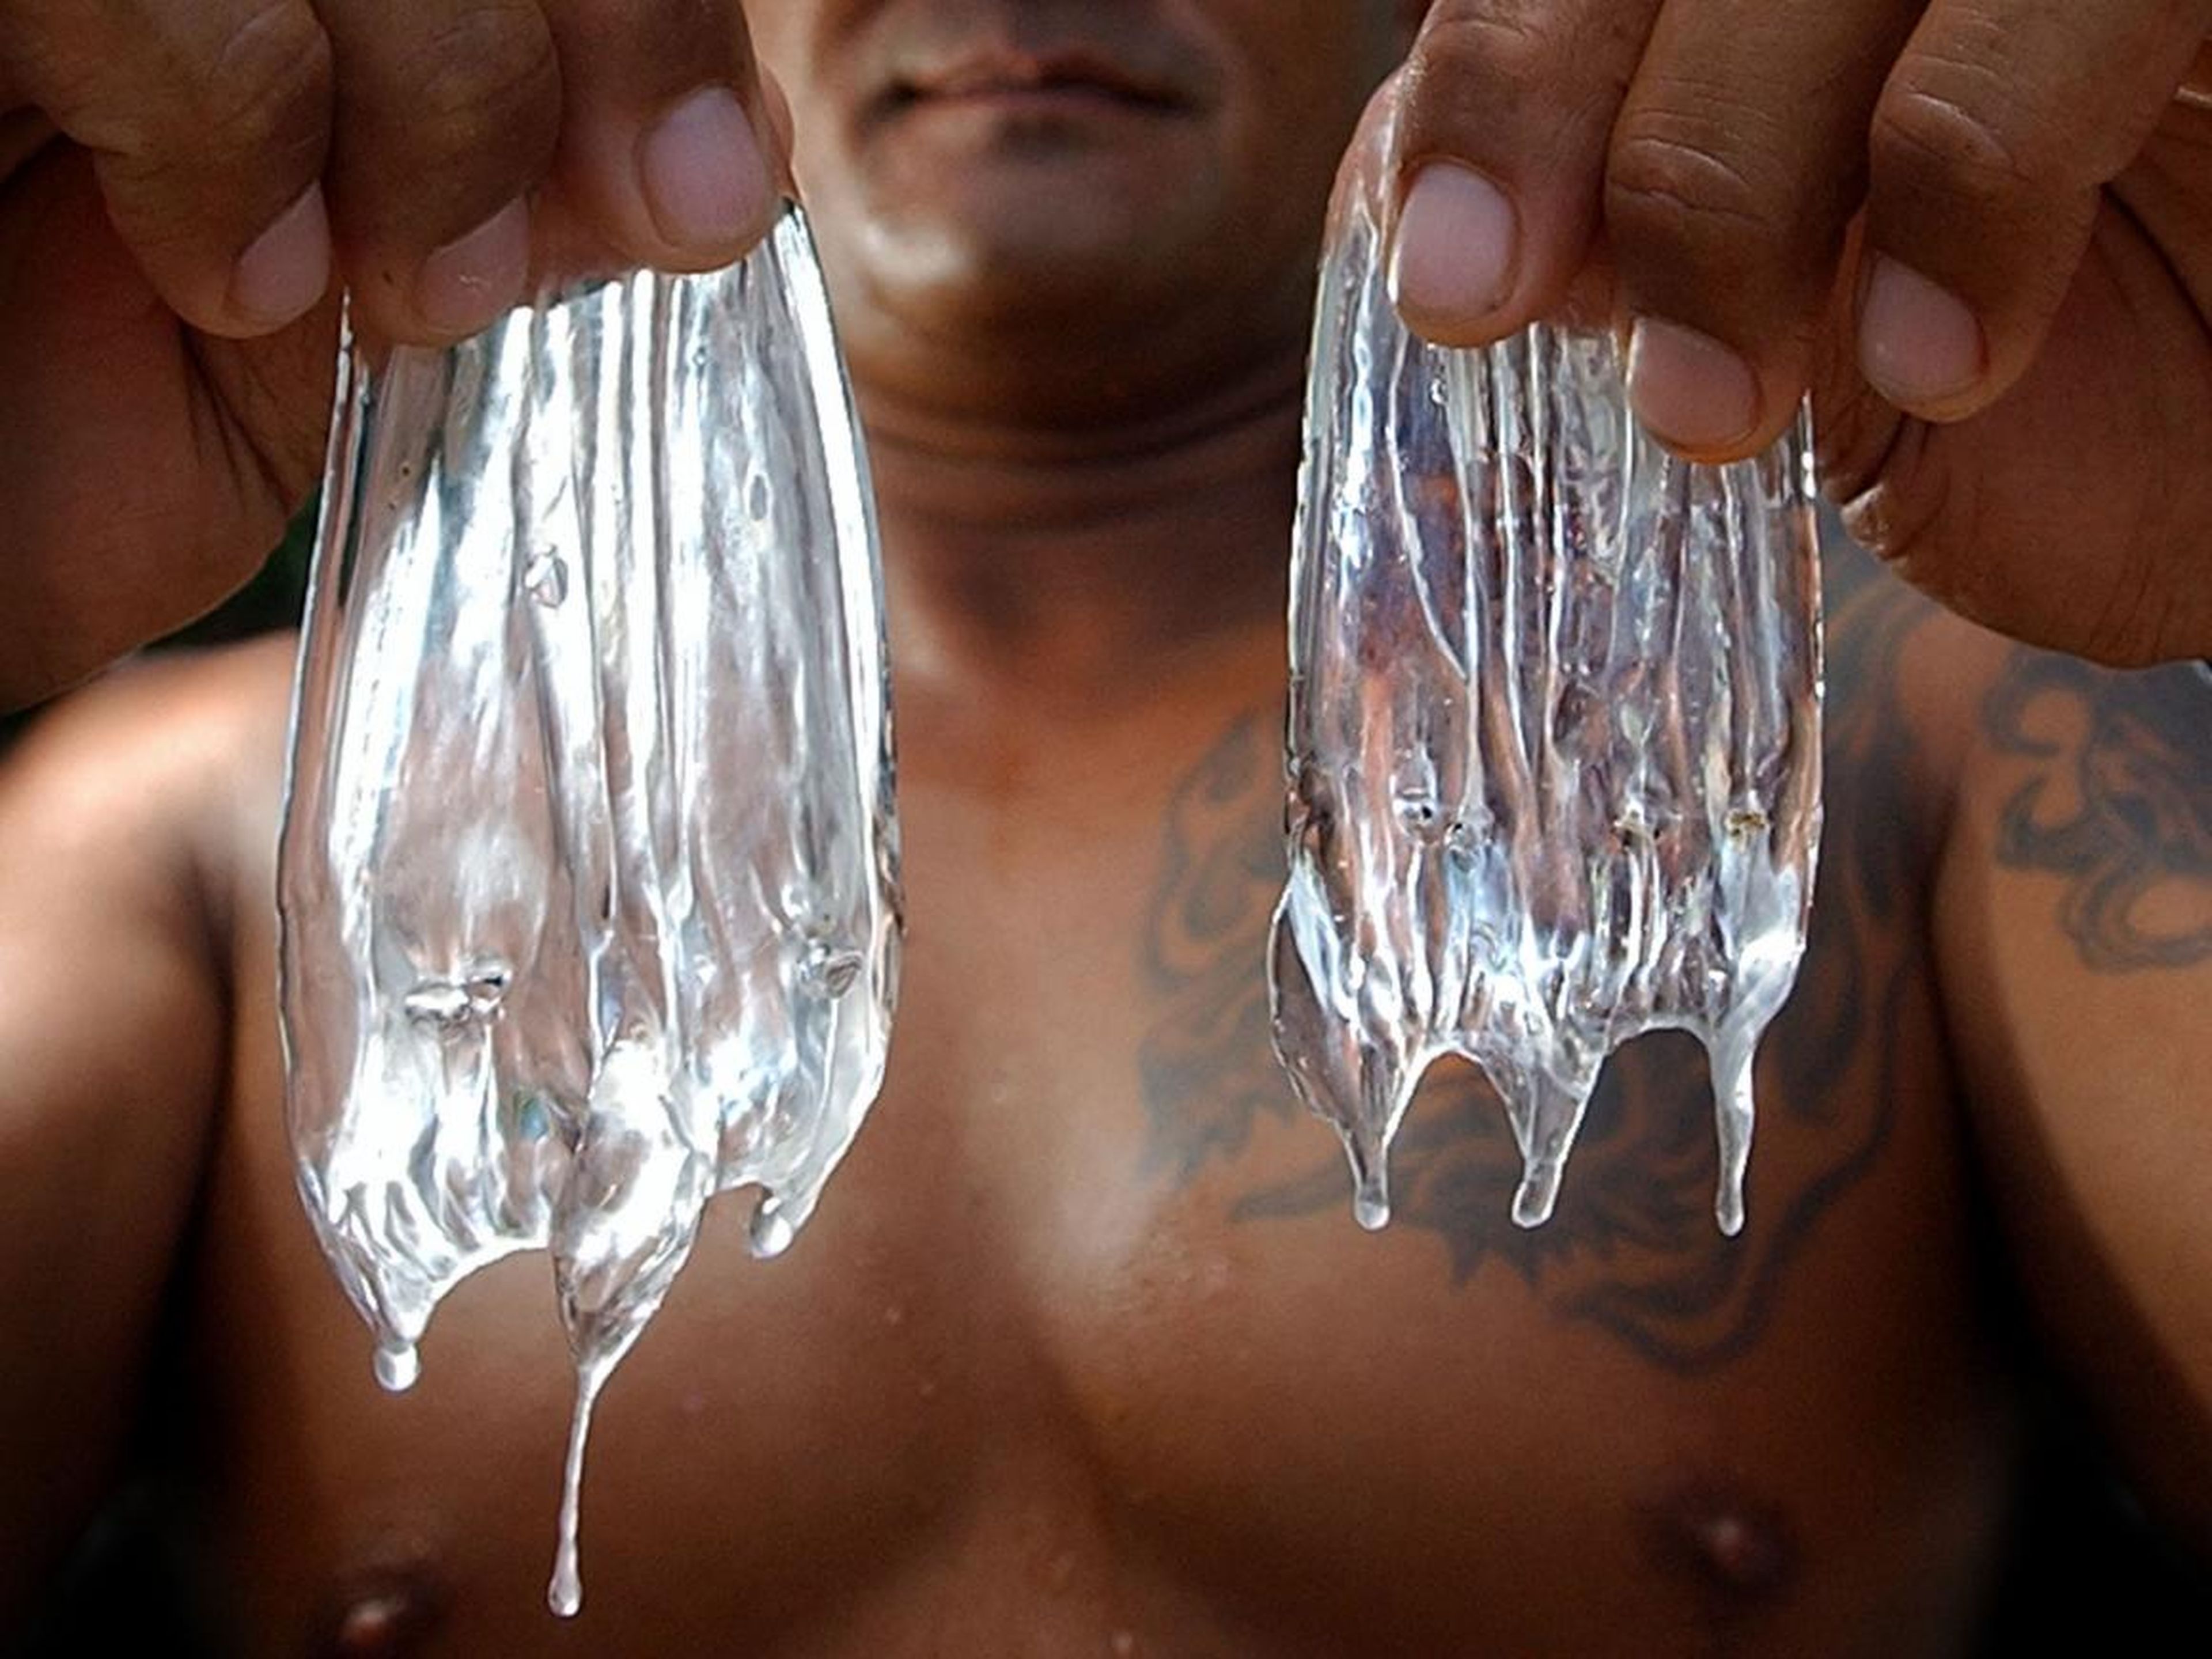 Curtis Cuba, un socorrita de Hawai, sostiene dos medusas en la playa de Waikiki, el 22 de julio de 2003. Las cápsulas que gotean pueden causar una erupción cuando entran en contacto con la piel, incluso después de que haya muerto la medusa.